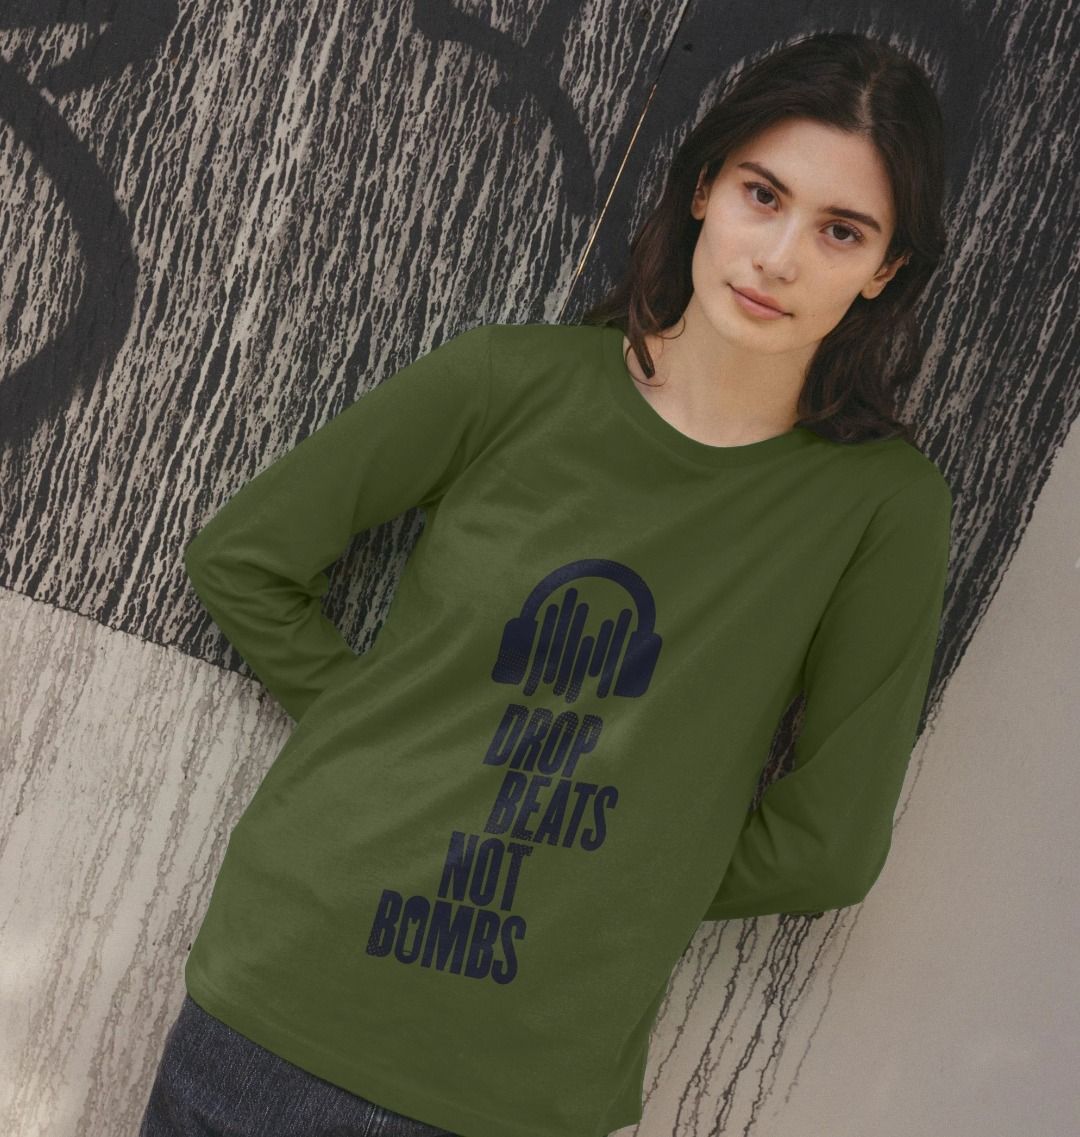 "Drop Beats Not Bombs" Women's Long Sleeve T-Shirt